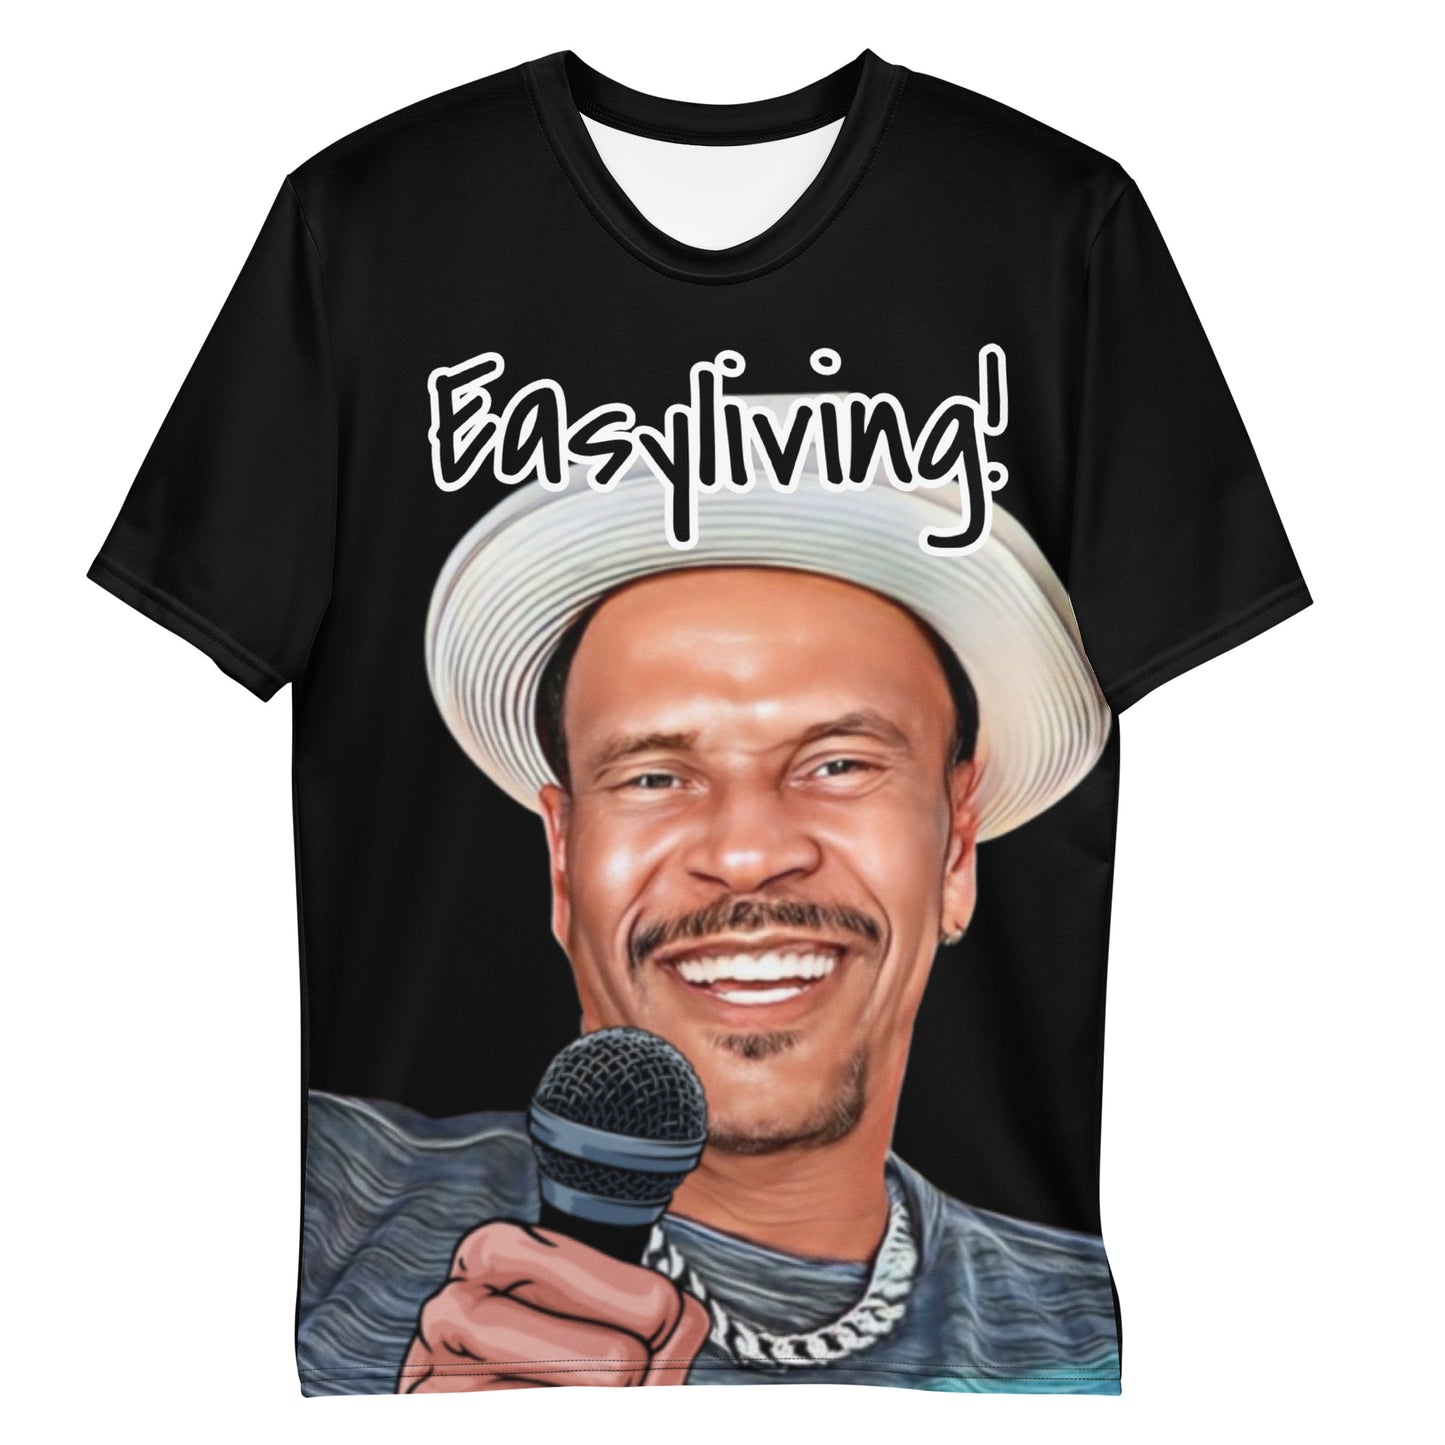 Easyliving! Men's t-shirt - Black